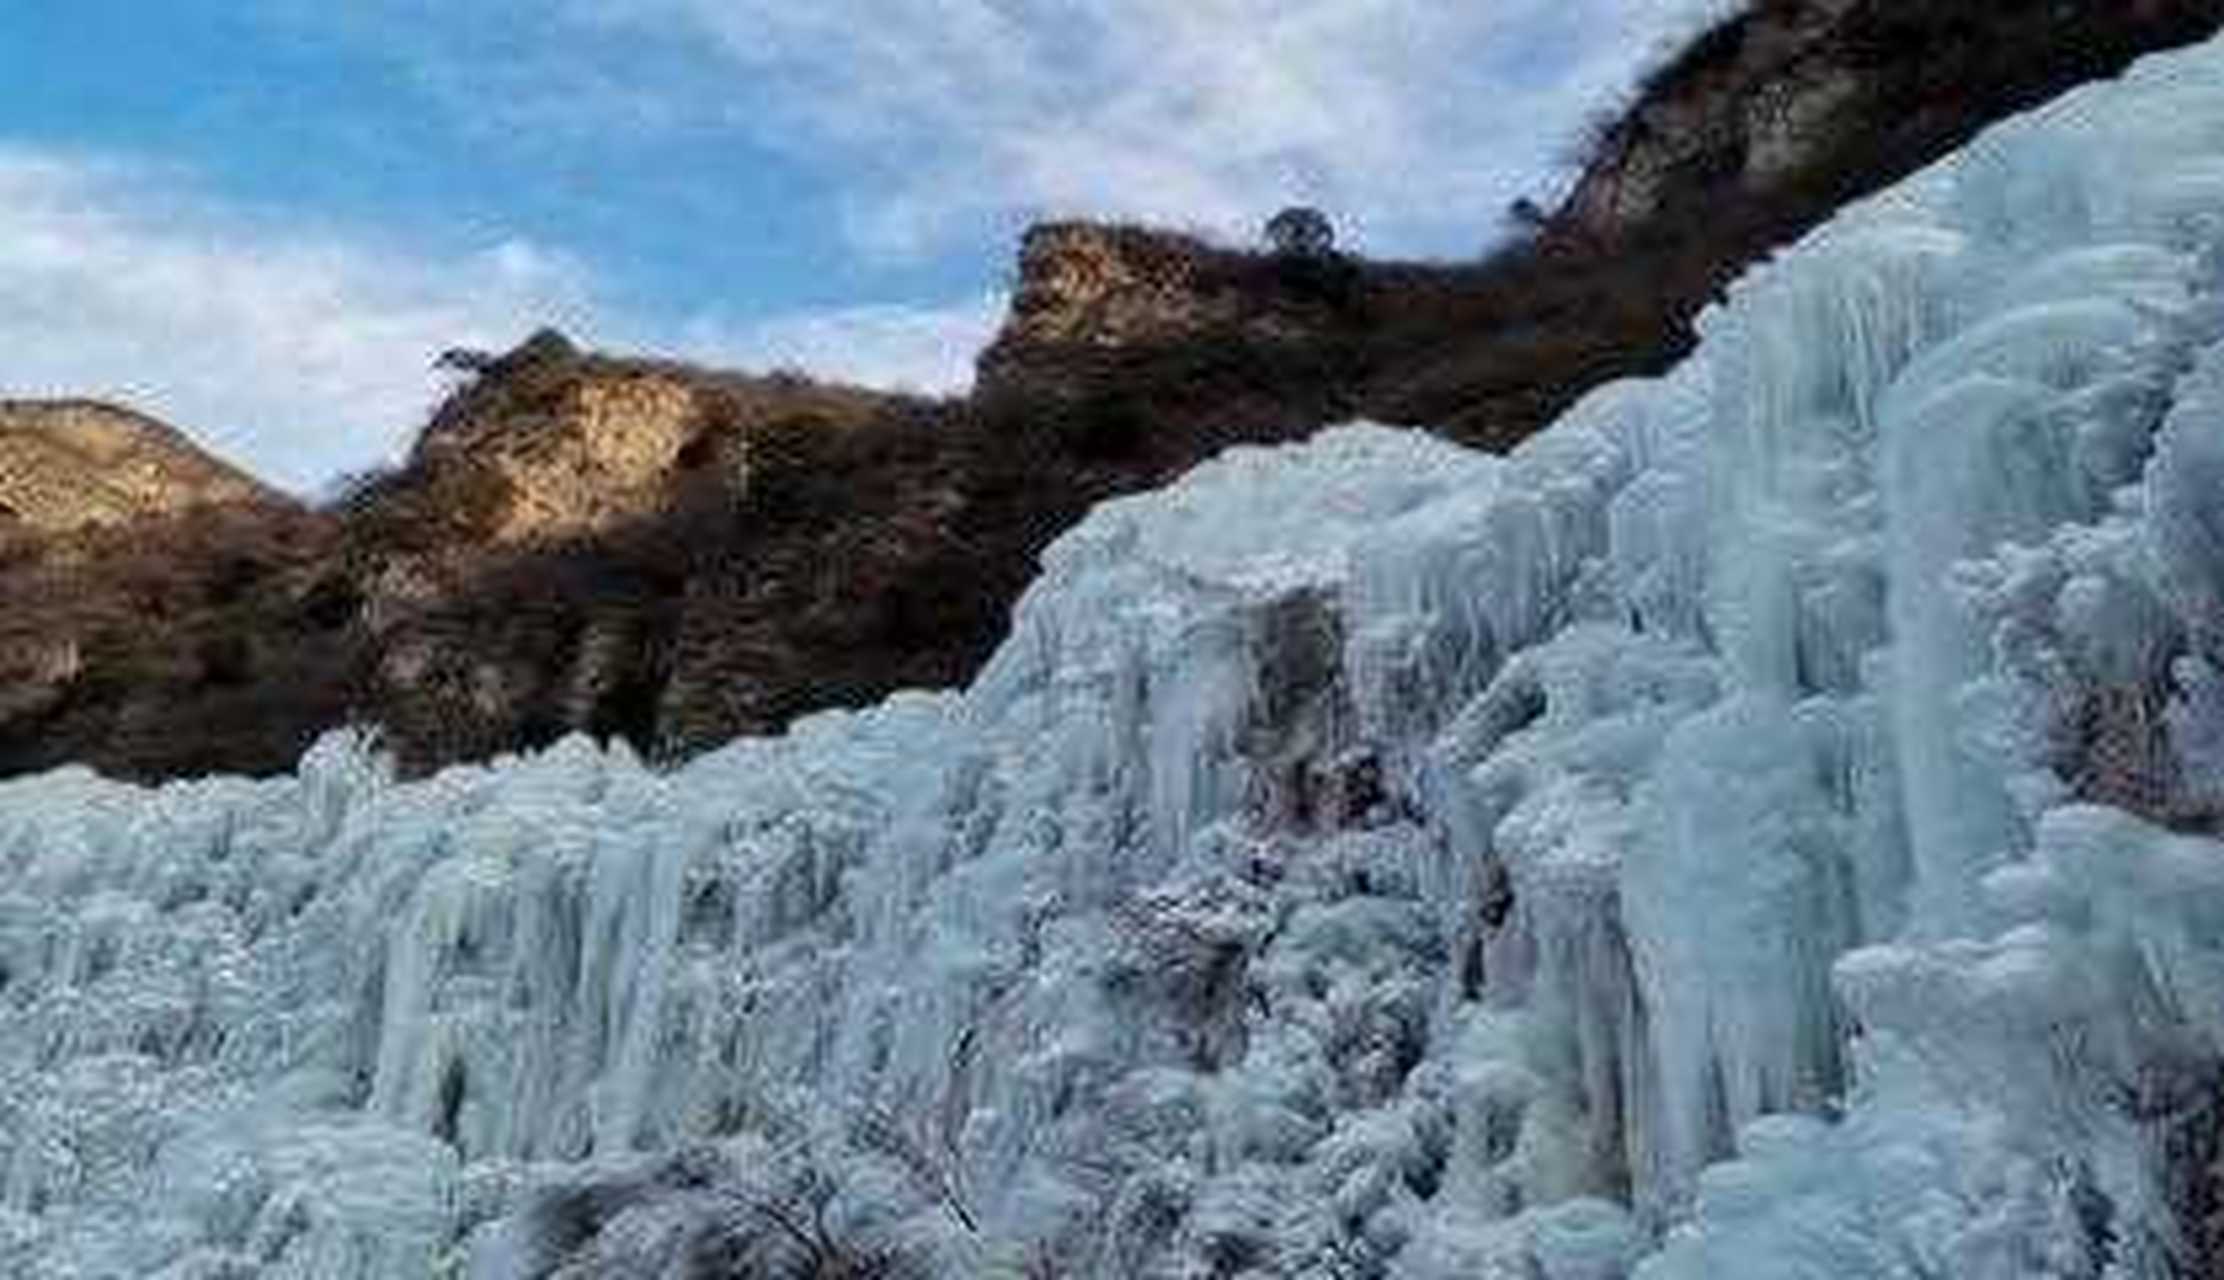 如果你向往冰雪,就应该去北京房山的冰瀑看看,泉水流经的石壁上凝成